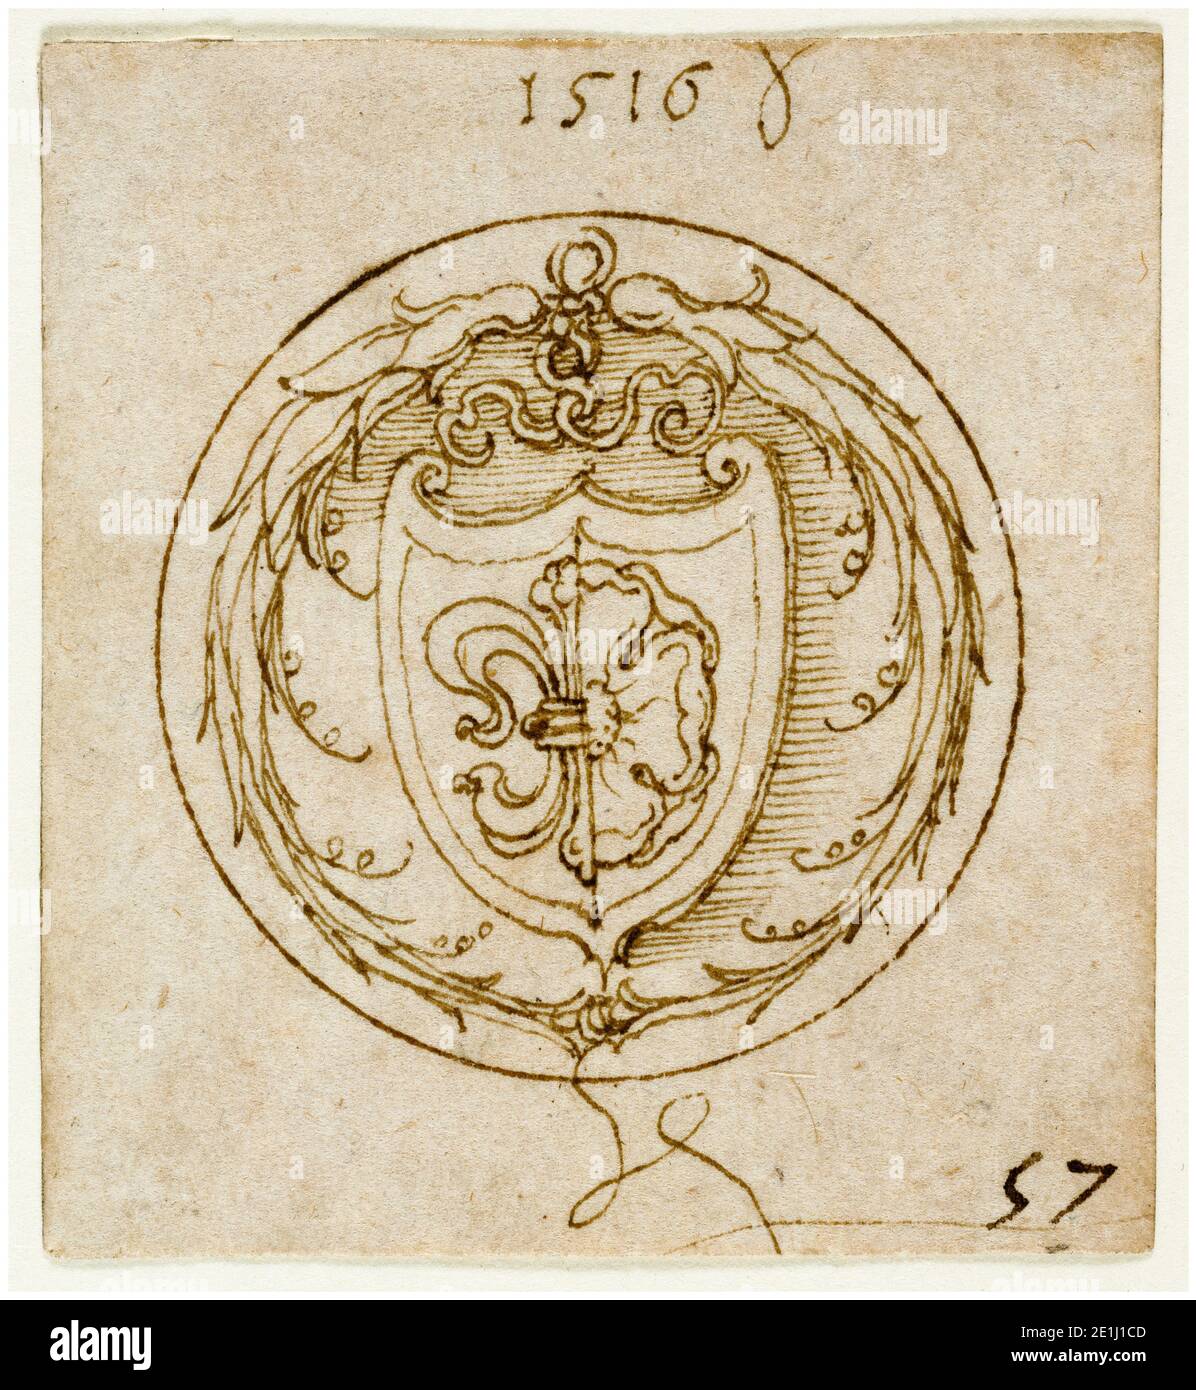 Albrecht Dürer, conception d'un anneau décoratif ou de signe avec les armoiries de Lazarus Sprengler, dessin, 1516 Banque D'Images